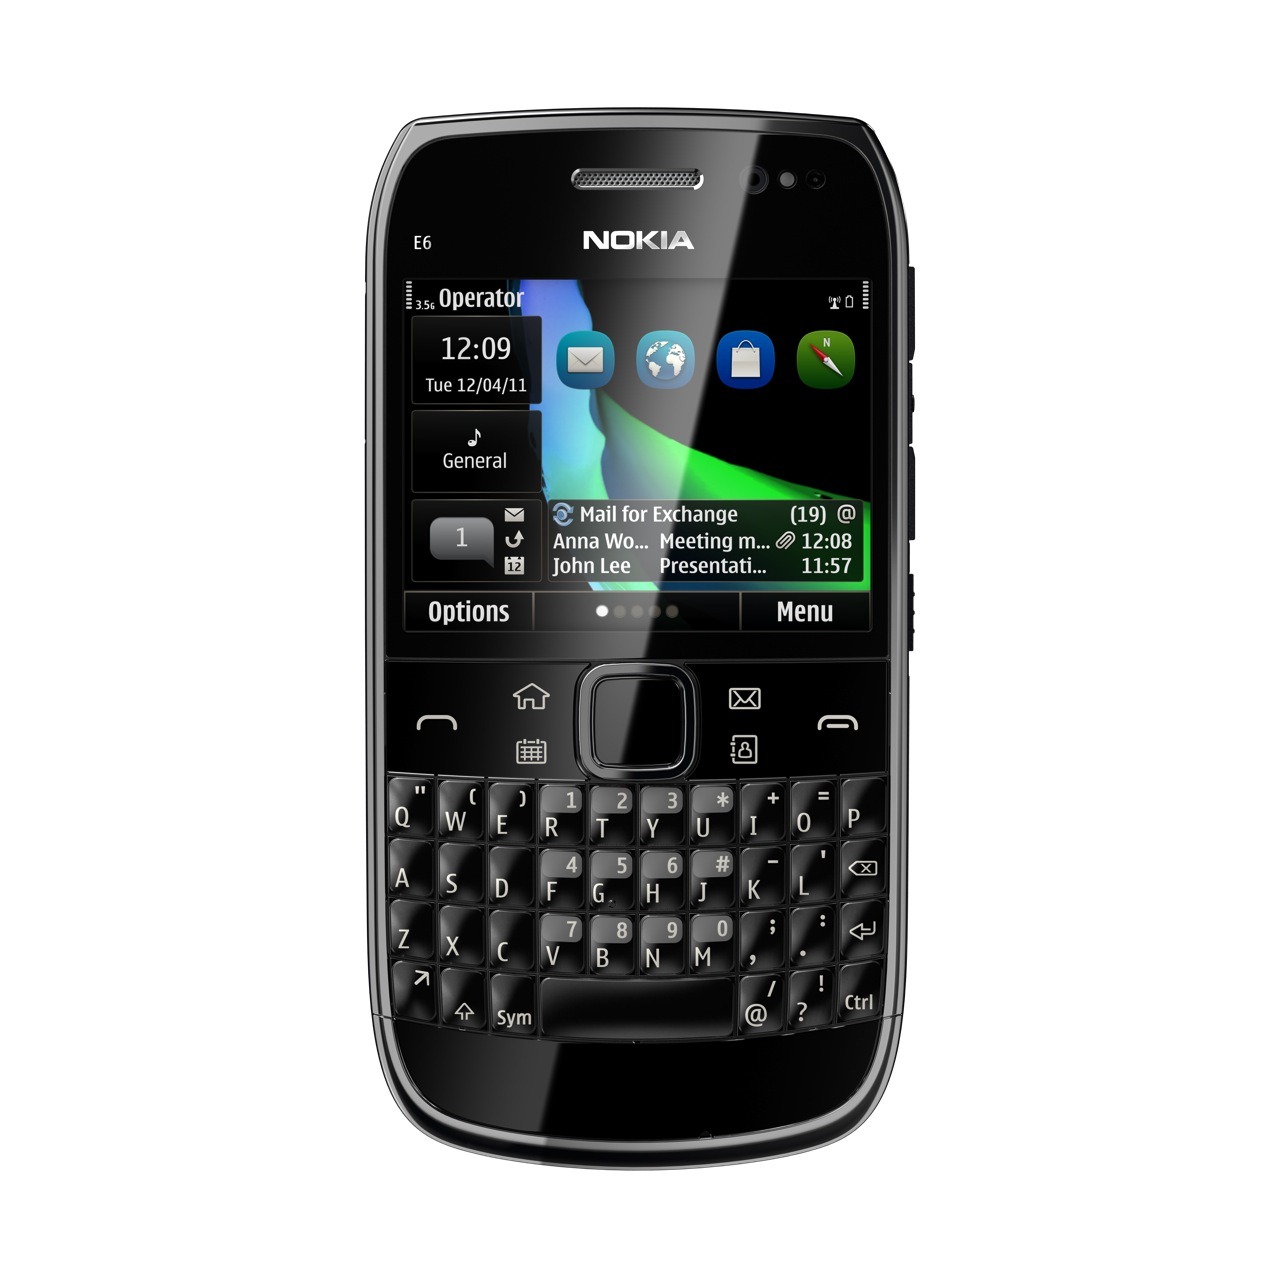 Картинка телефона нокиа. Nokia e6. Nokia e6-00. Кнопочный телефон нокиа е6. Nokia QWERTY e6.